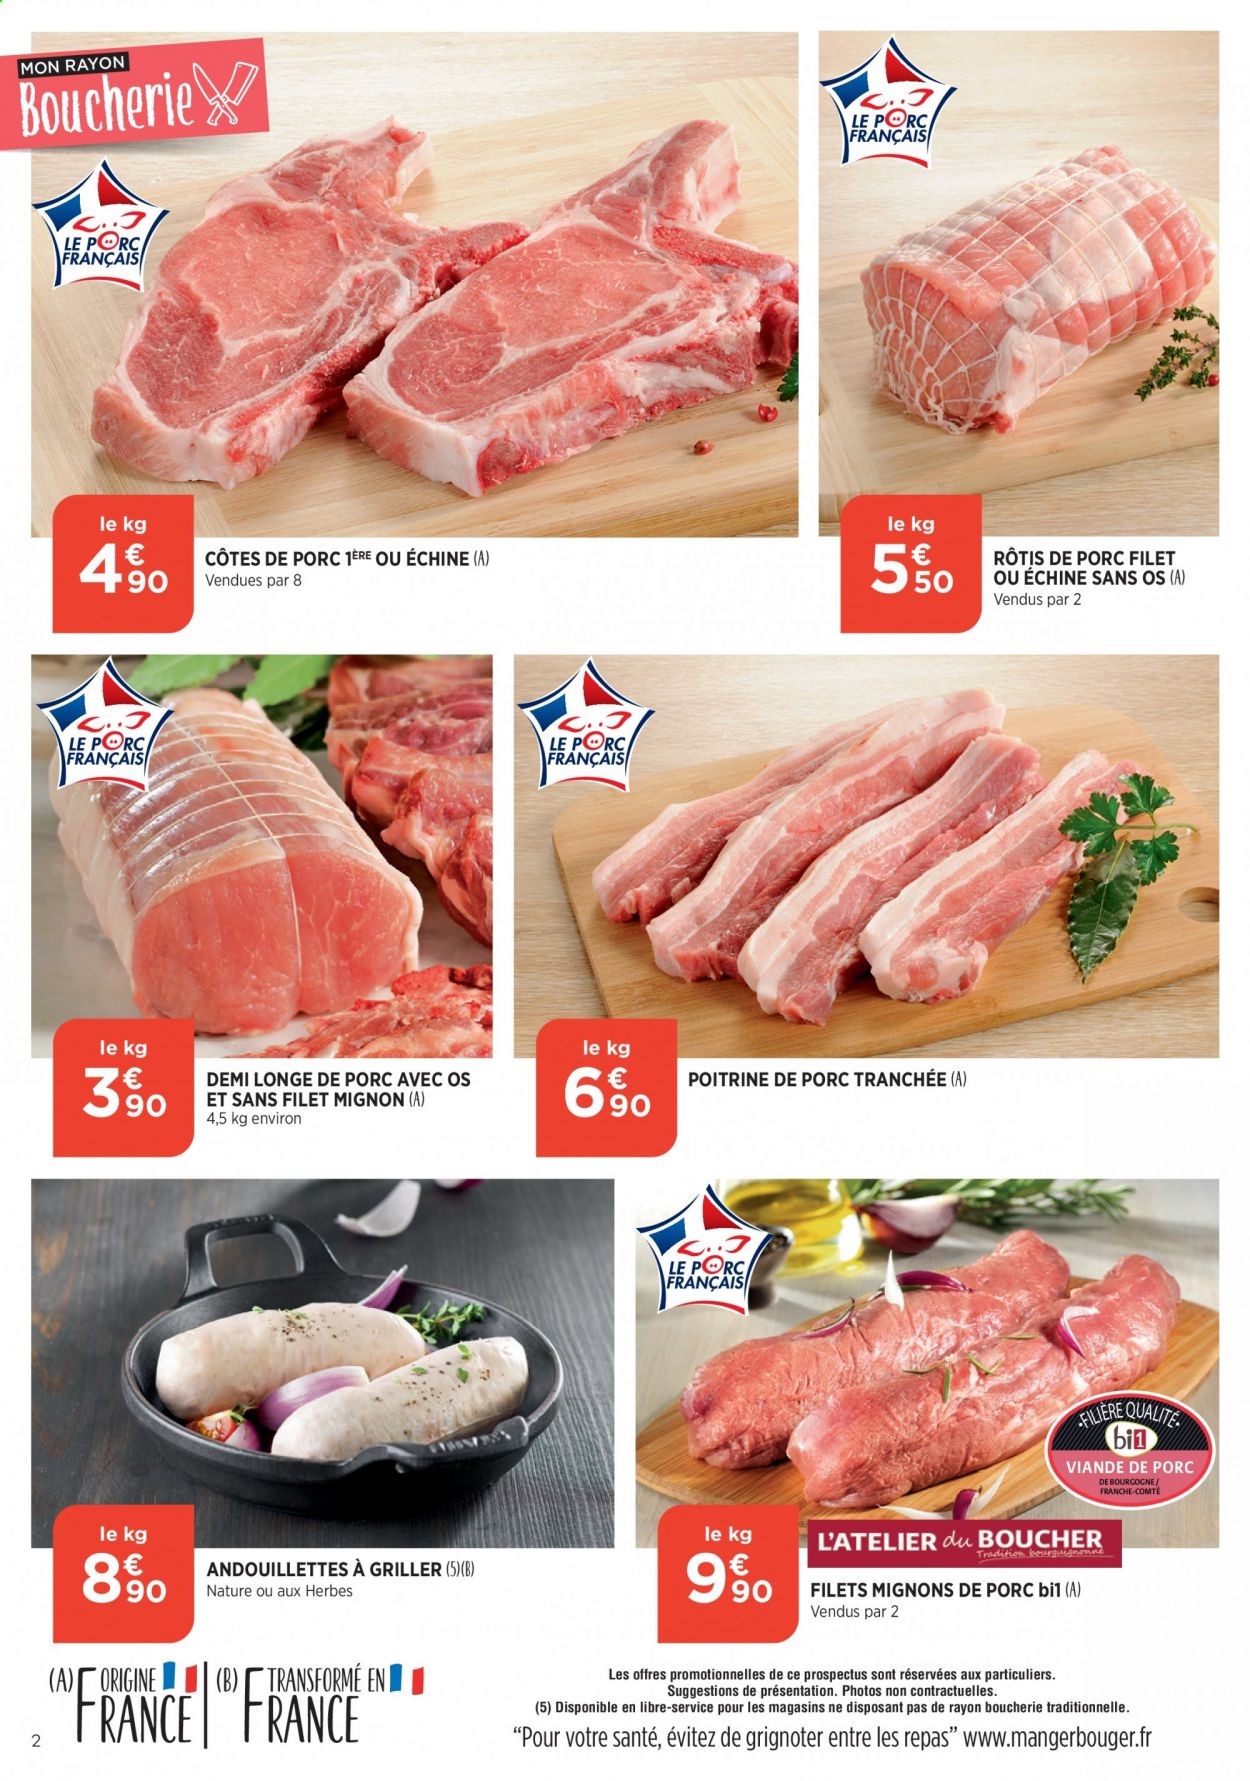 thumbnail - Catalogue Bi1 - 14/04/2021 - 19/04/2021 - Produits soldés - côtes de porc, filet mignon, poitrine de porc, viande de porc, longe de porc, Comté. Page 2.